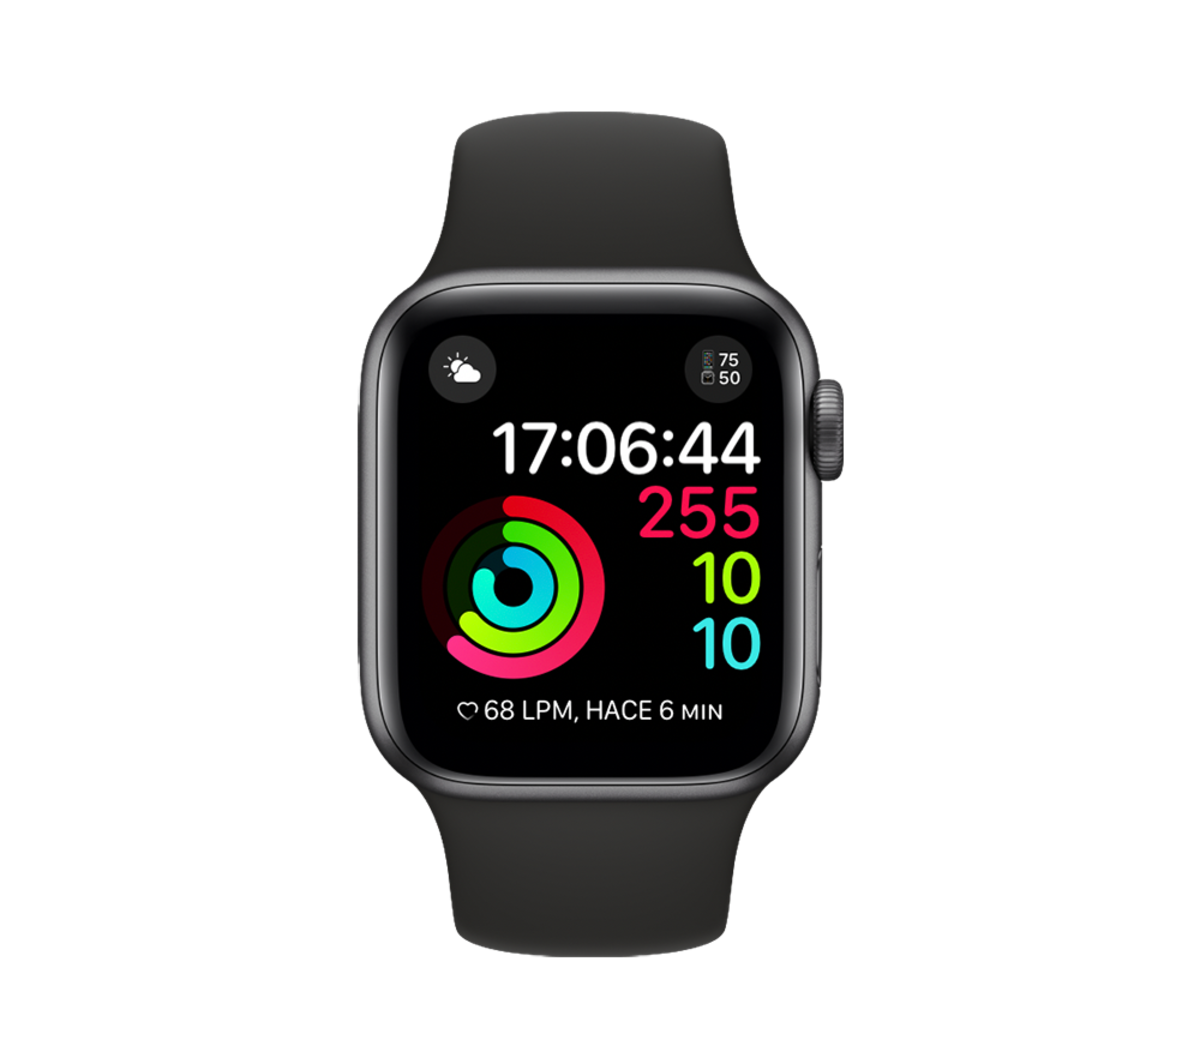 Batería del iPhone en el Apple Watch